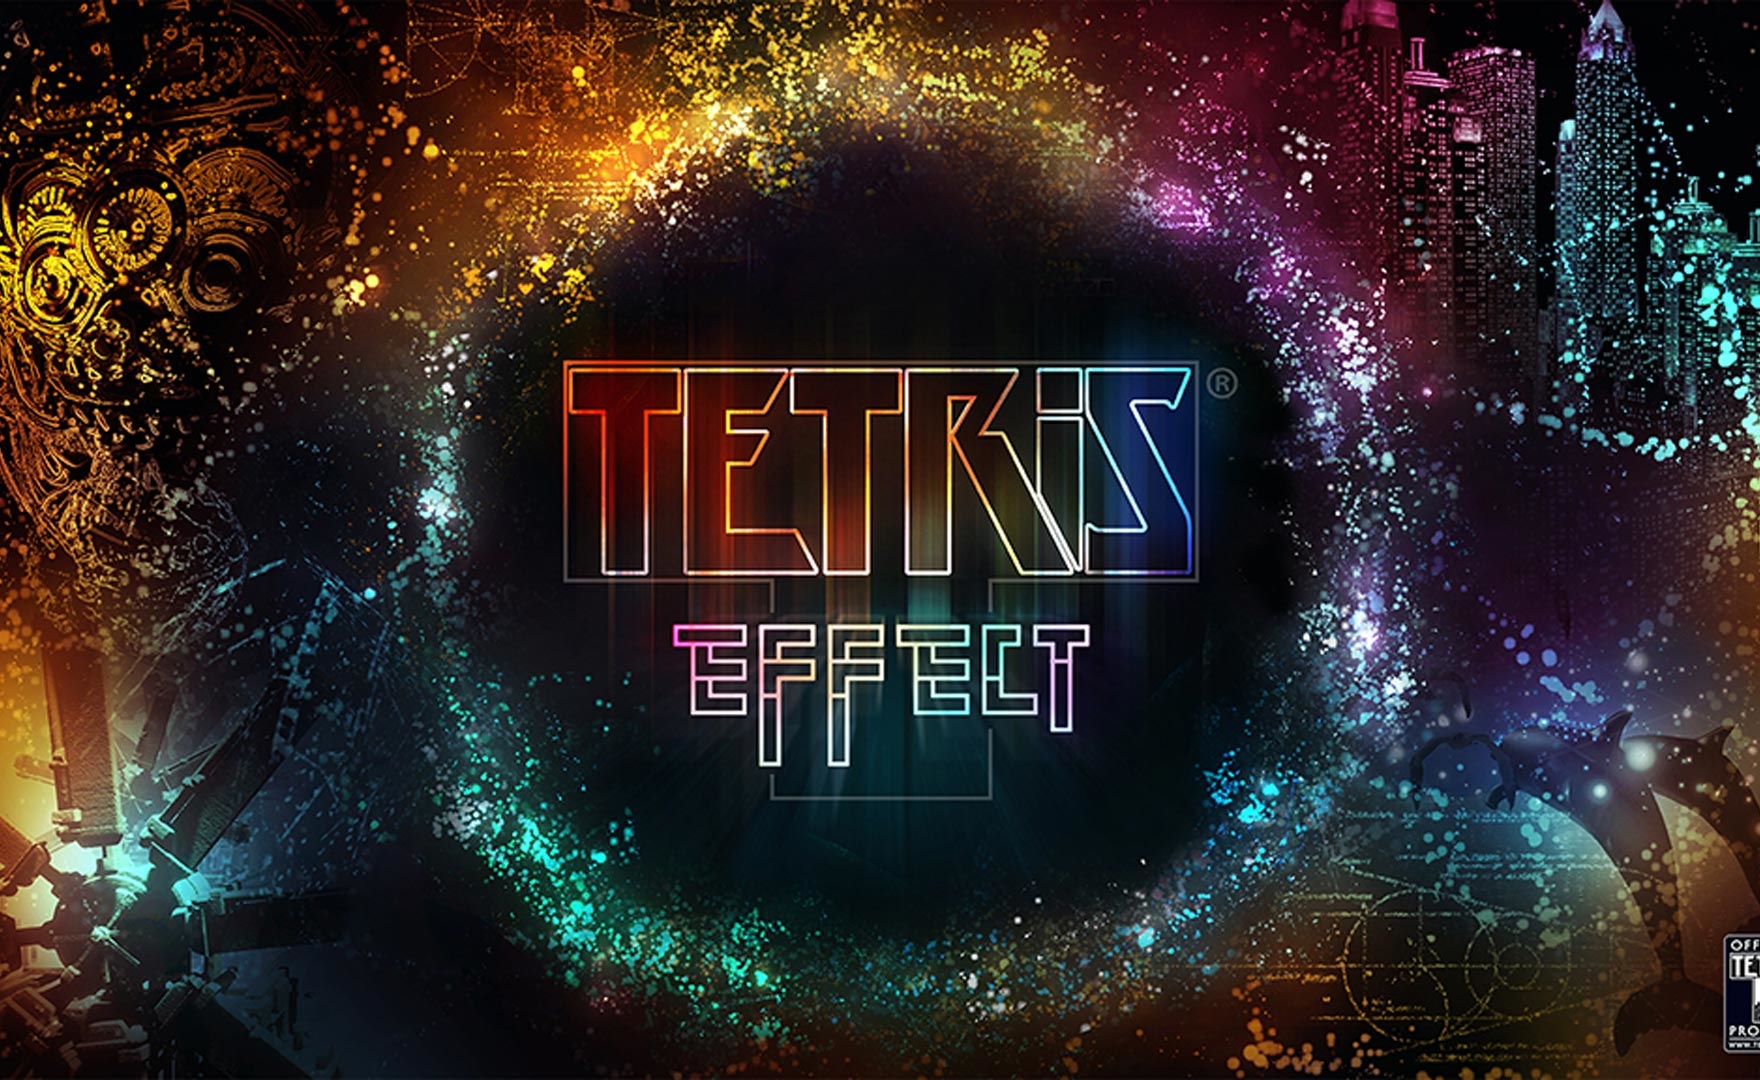 Tetris Effect: la versione PC è esclusiva Epic Games Store, ma serve Steam per giocare